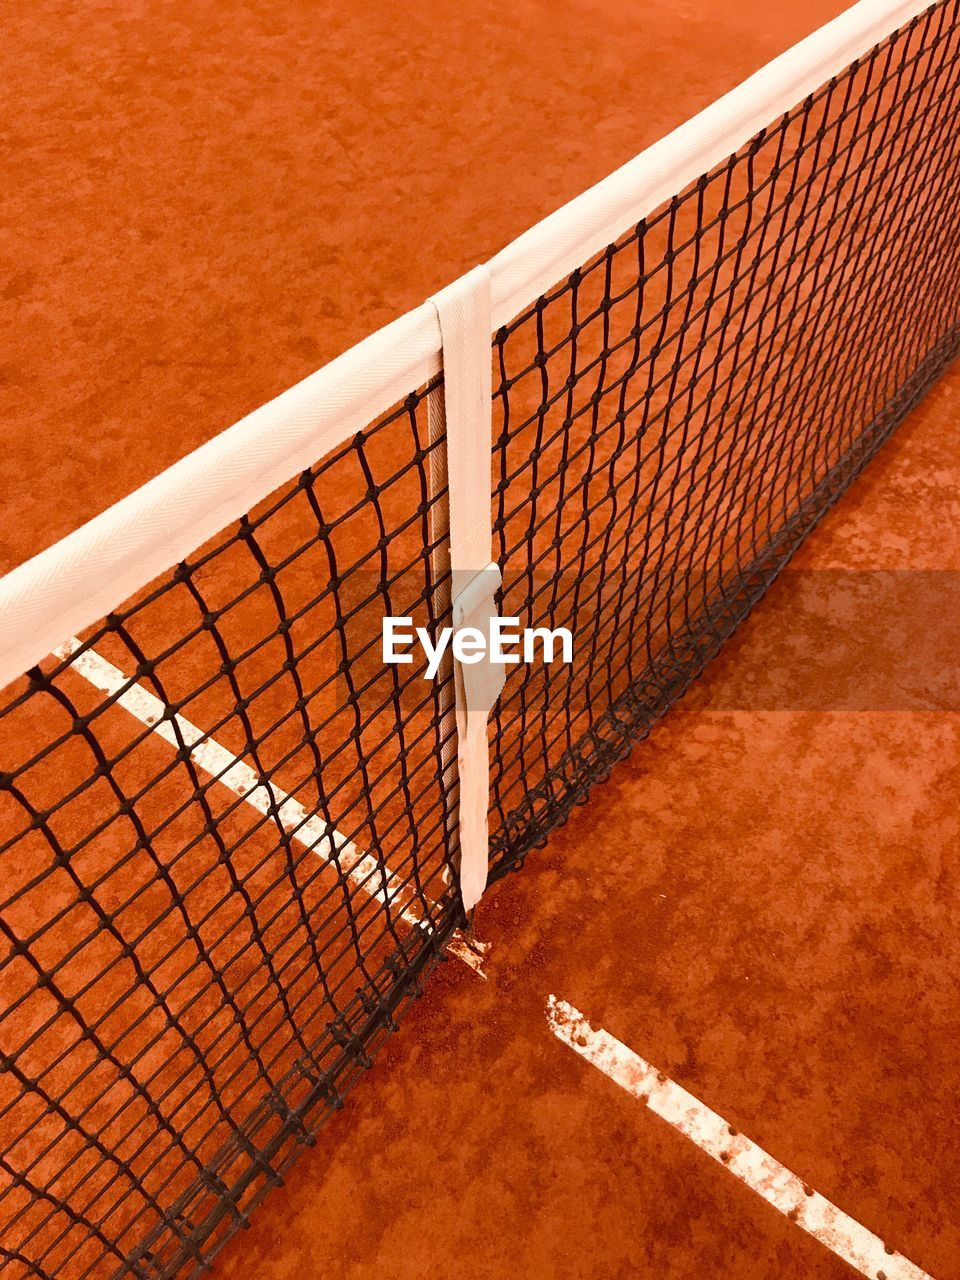 Net tennis court